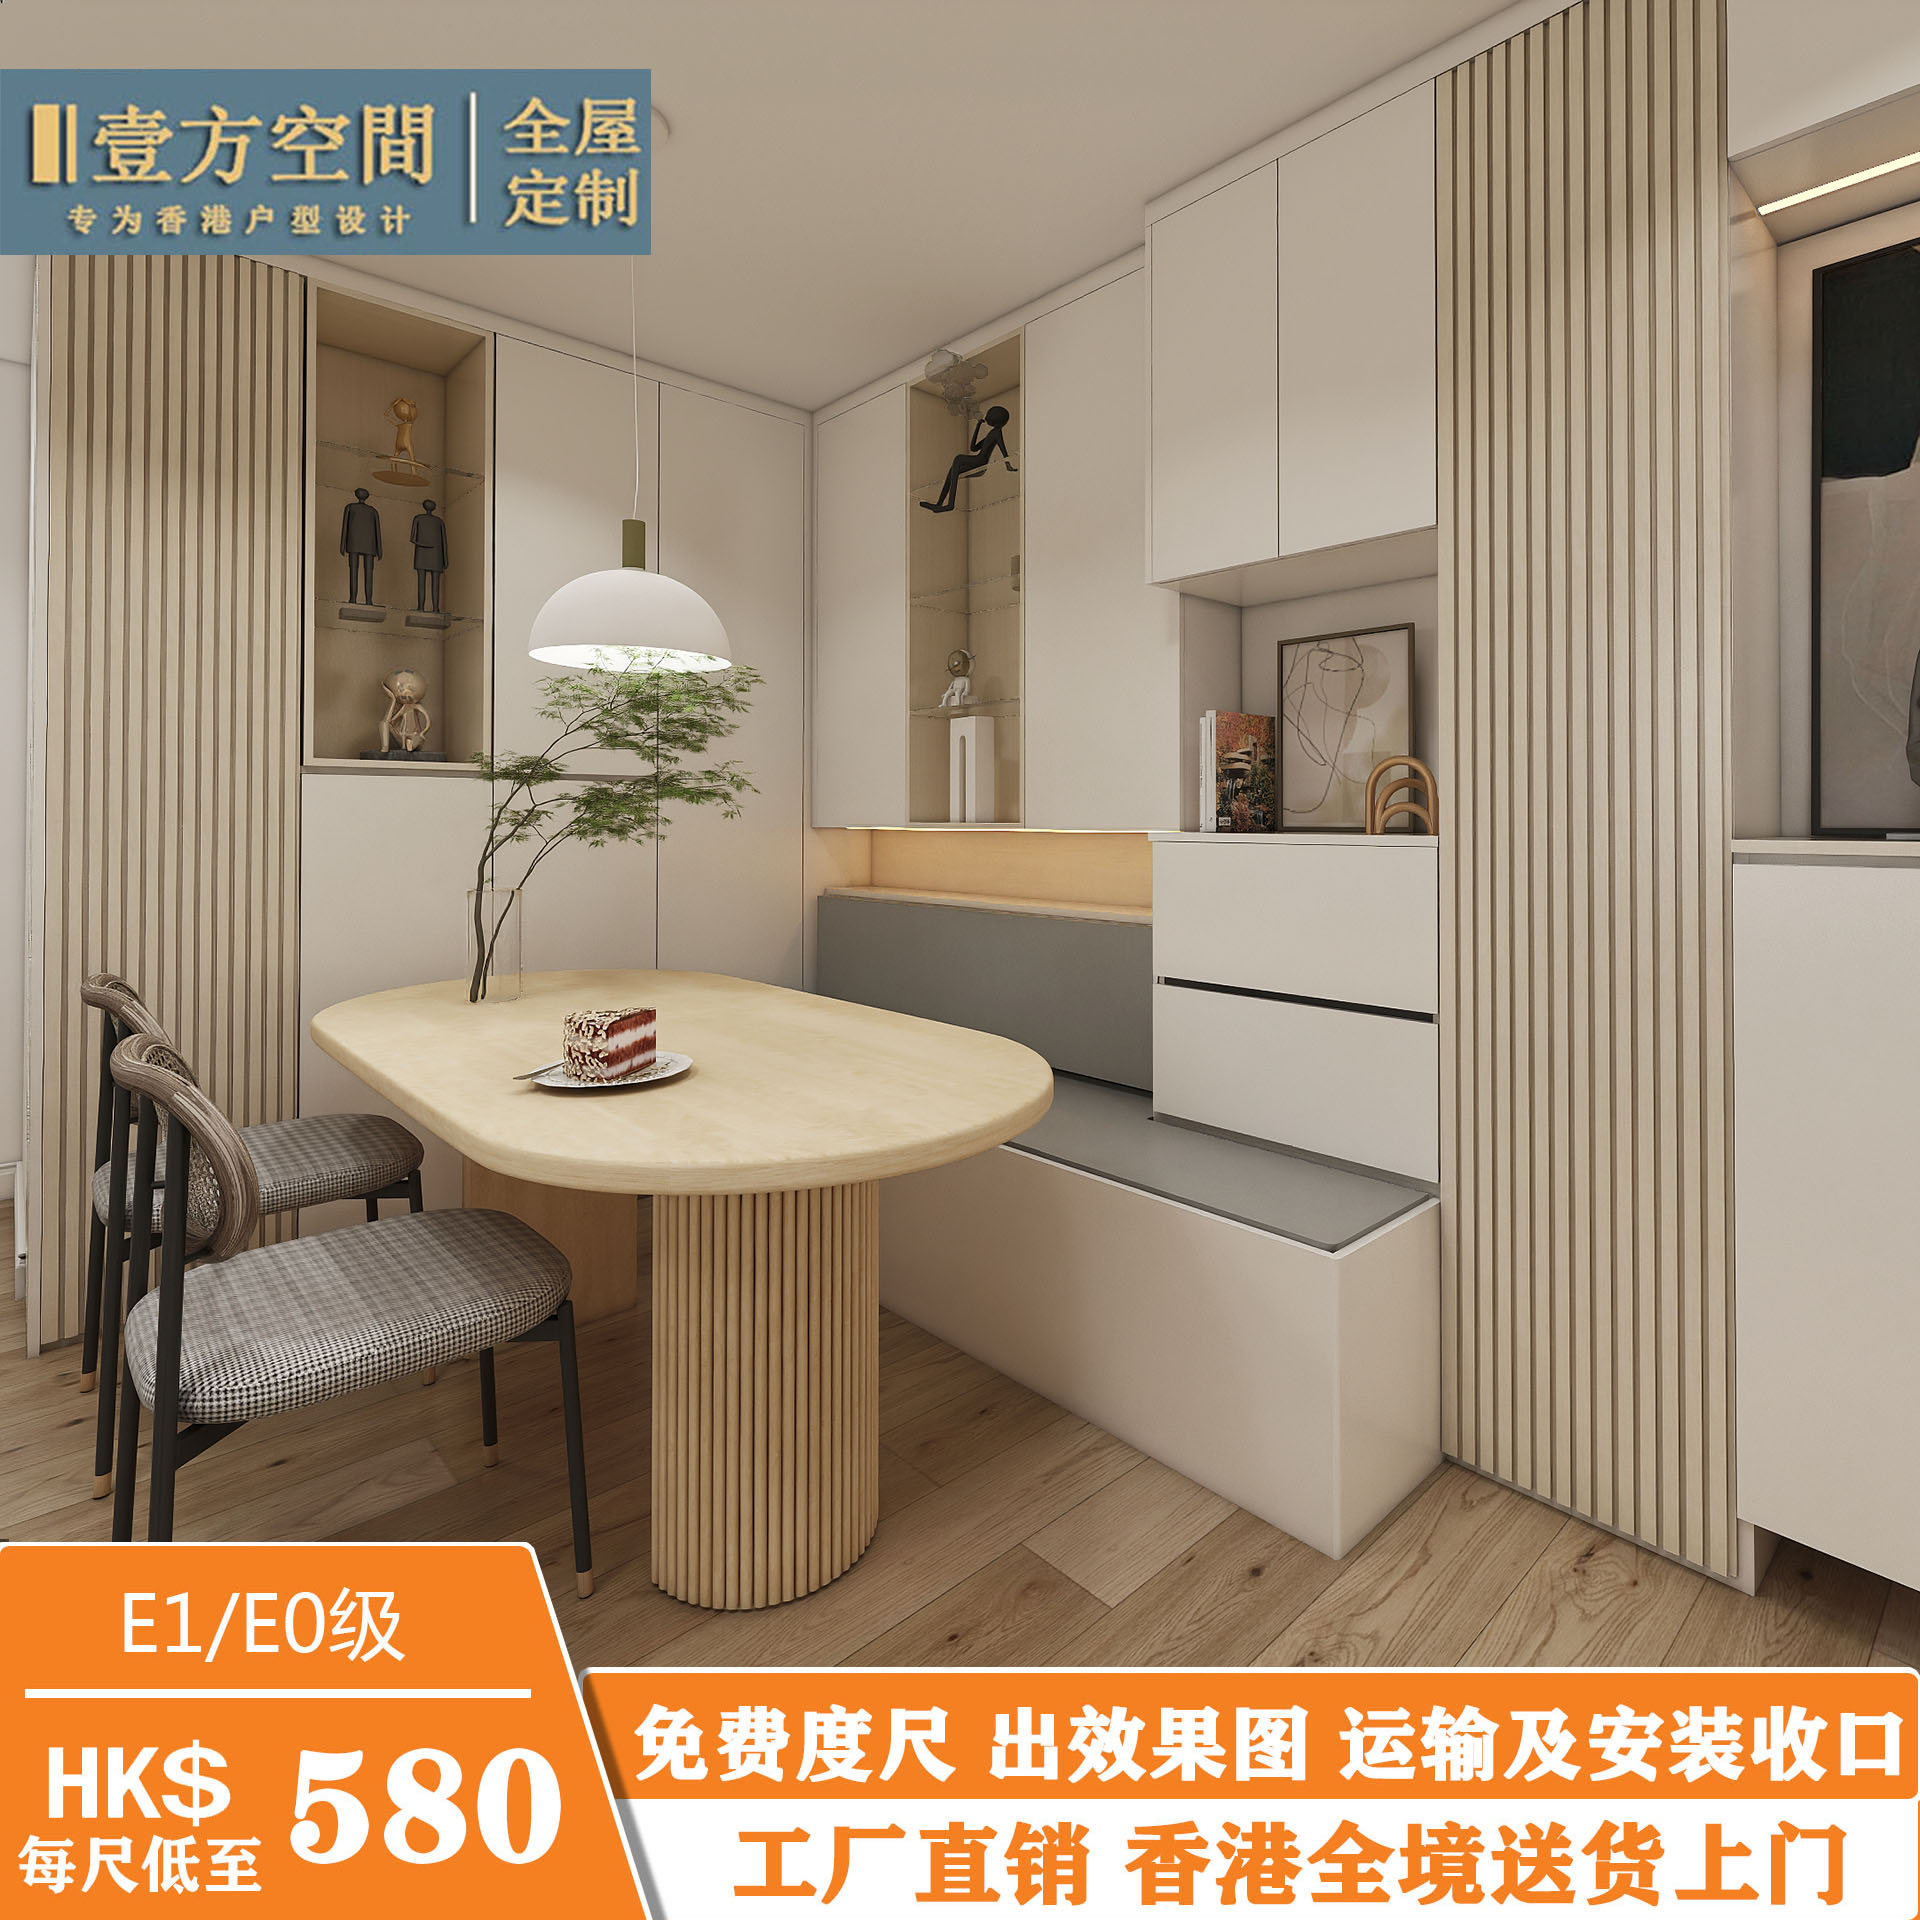 香港公屋家私订造c字柜房间家私设计装修卧室榻榻米油压床柜一体